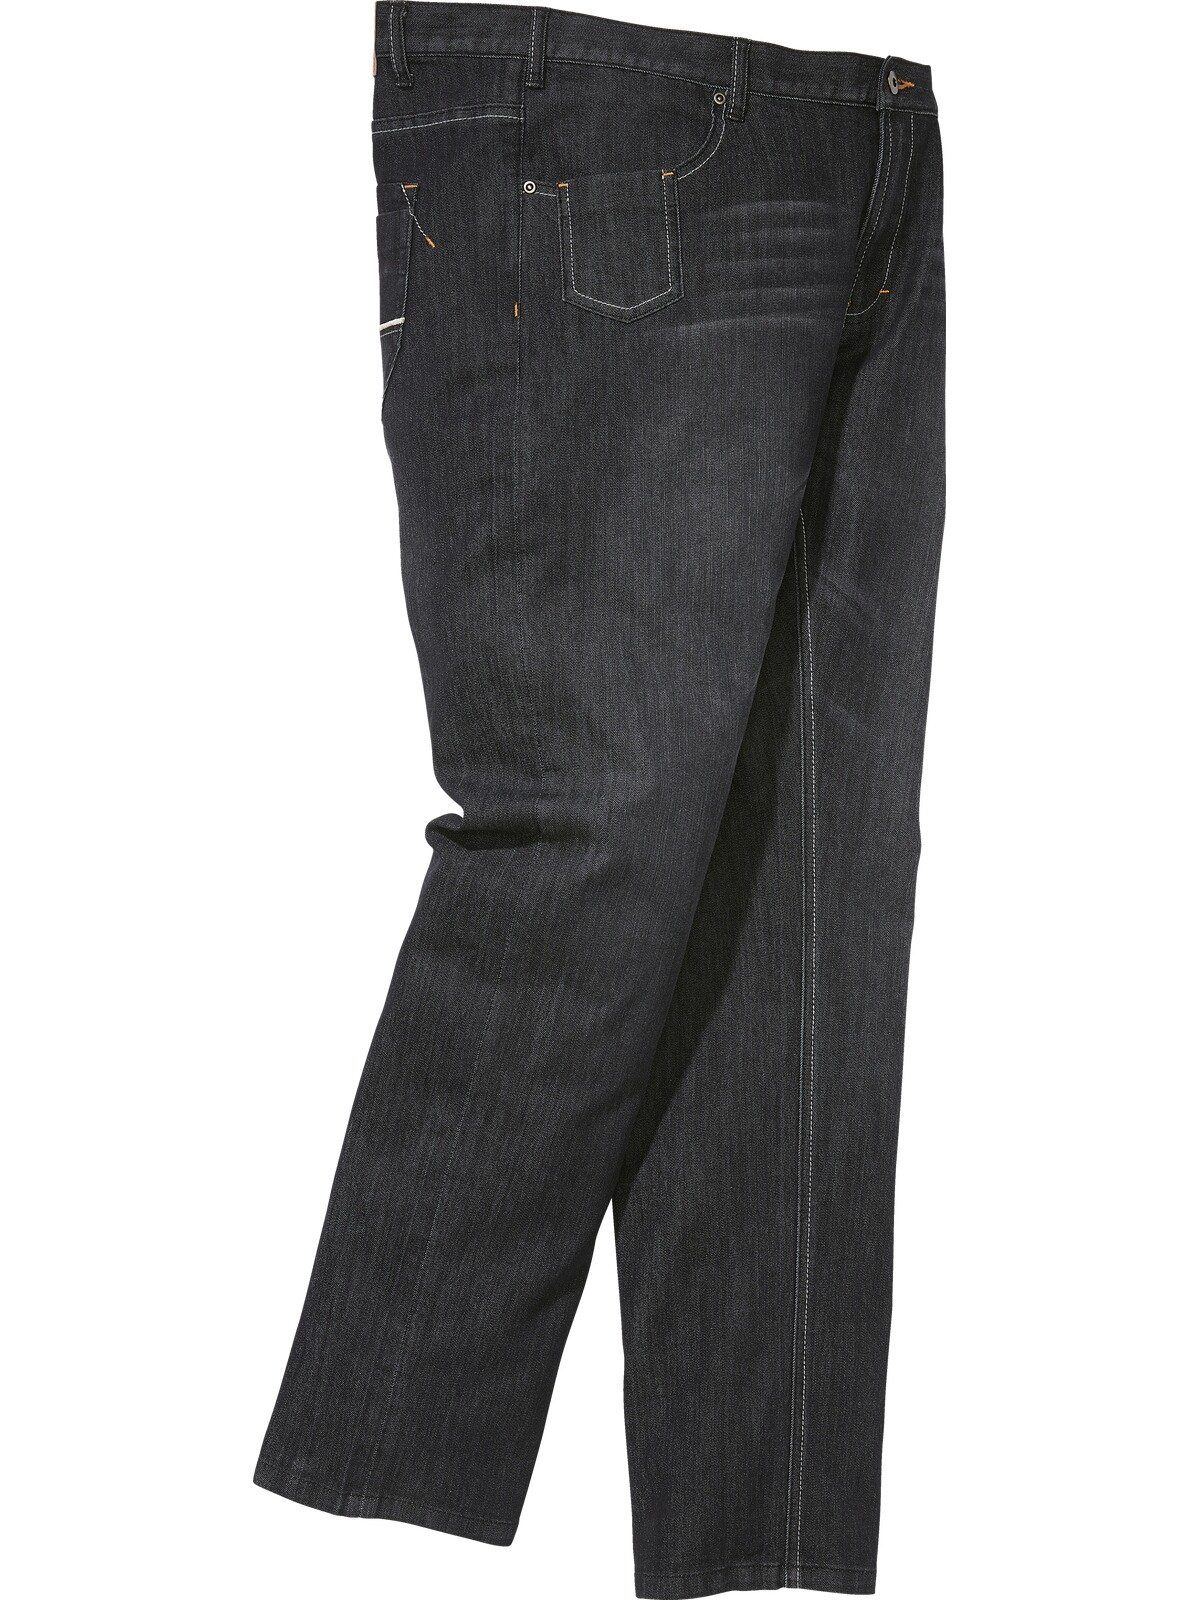 Charles Colby 5-Pocket-Jeans Five-Pocket-Design CASSANDER, BARON schwarz